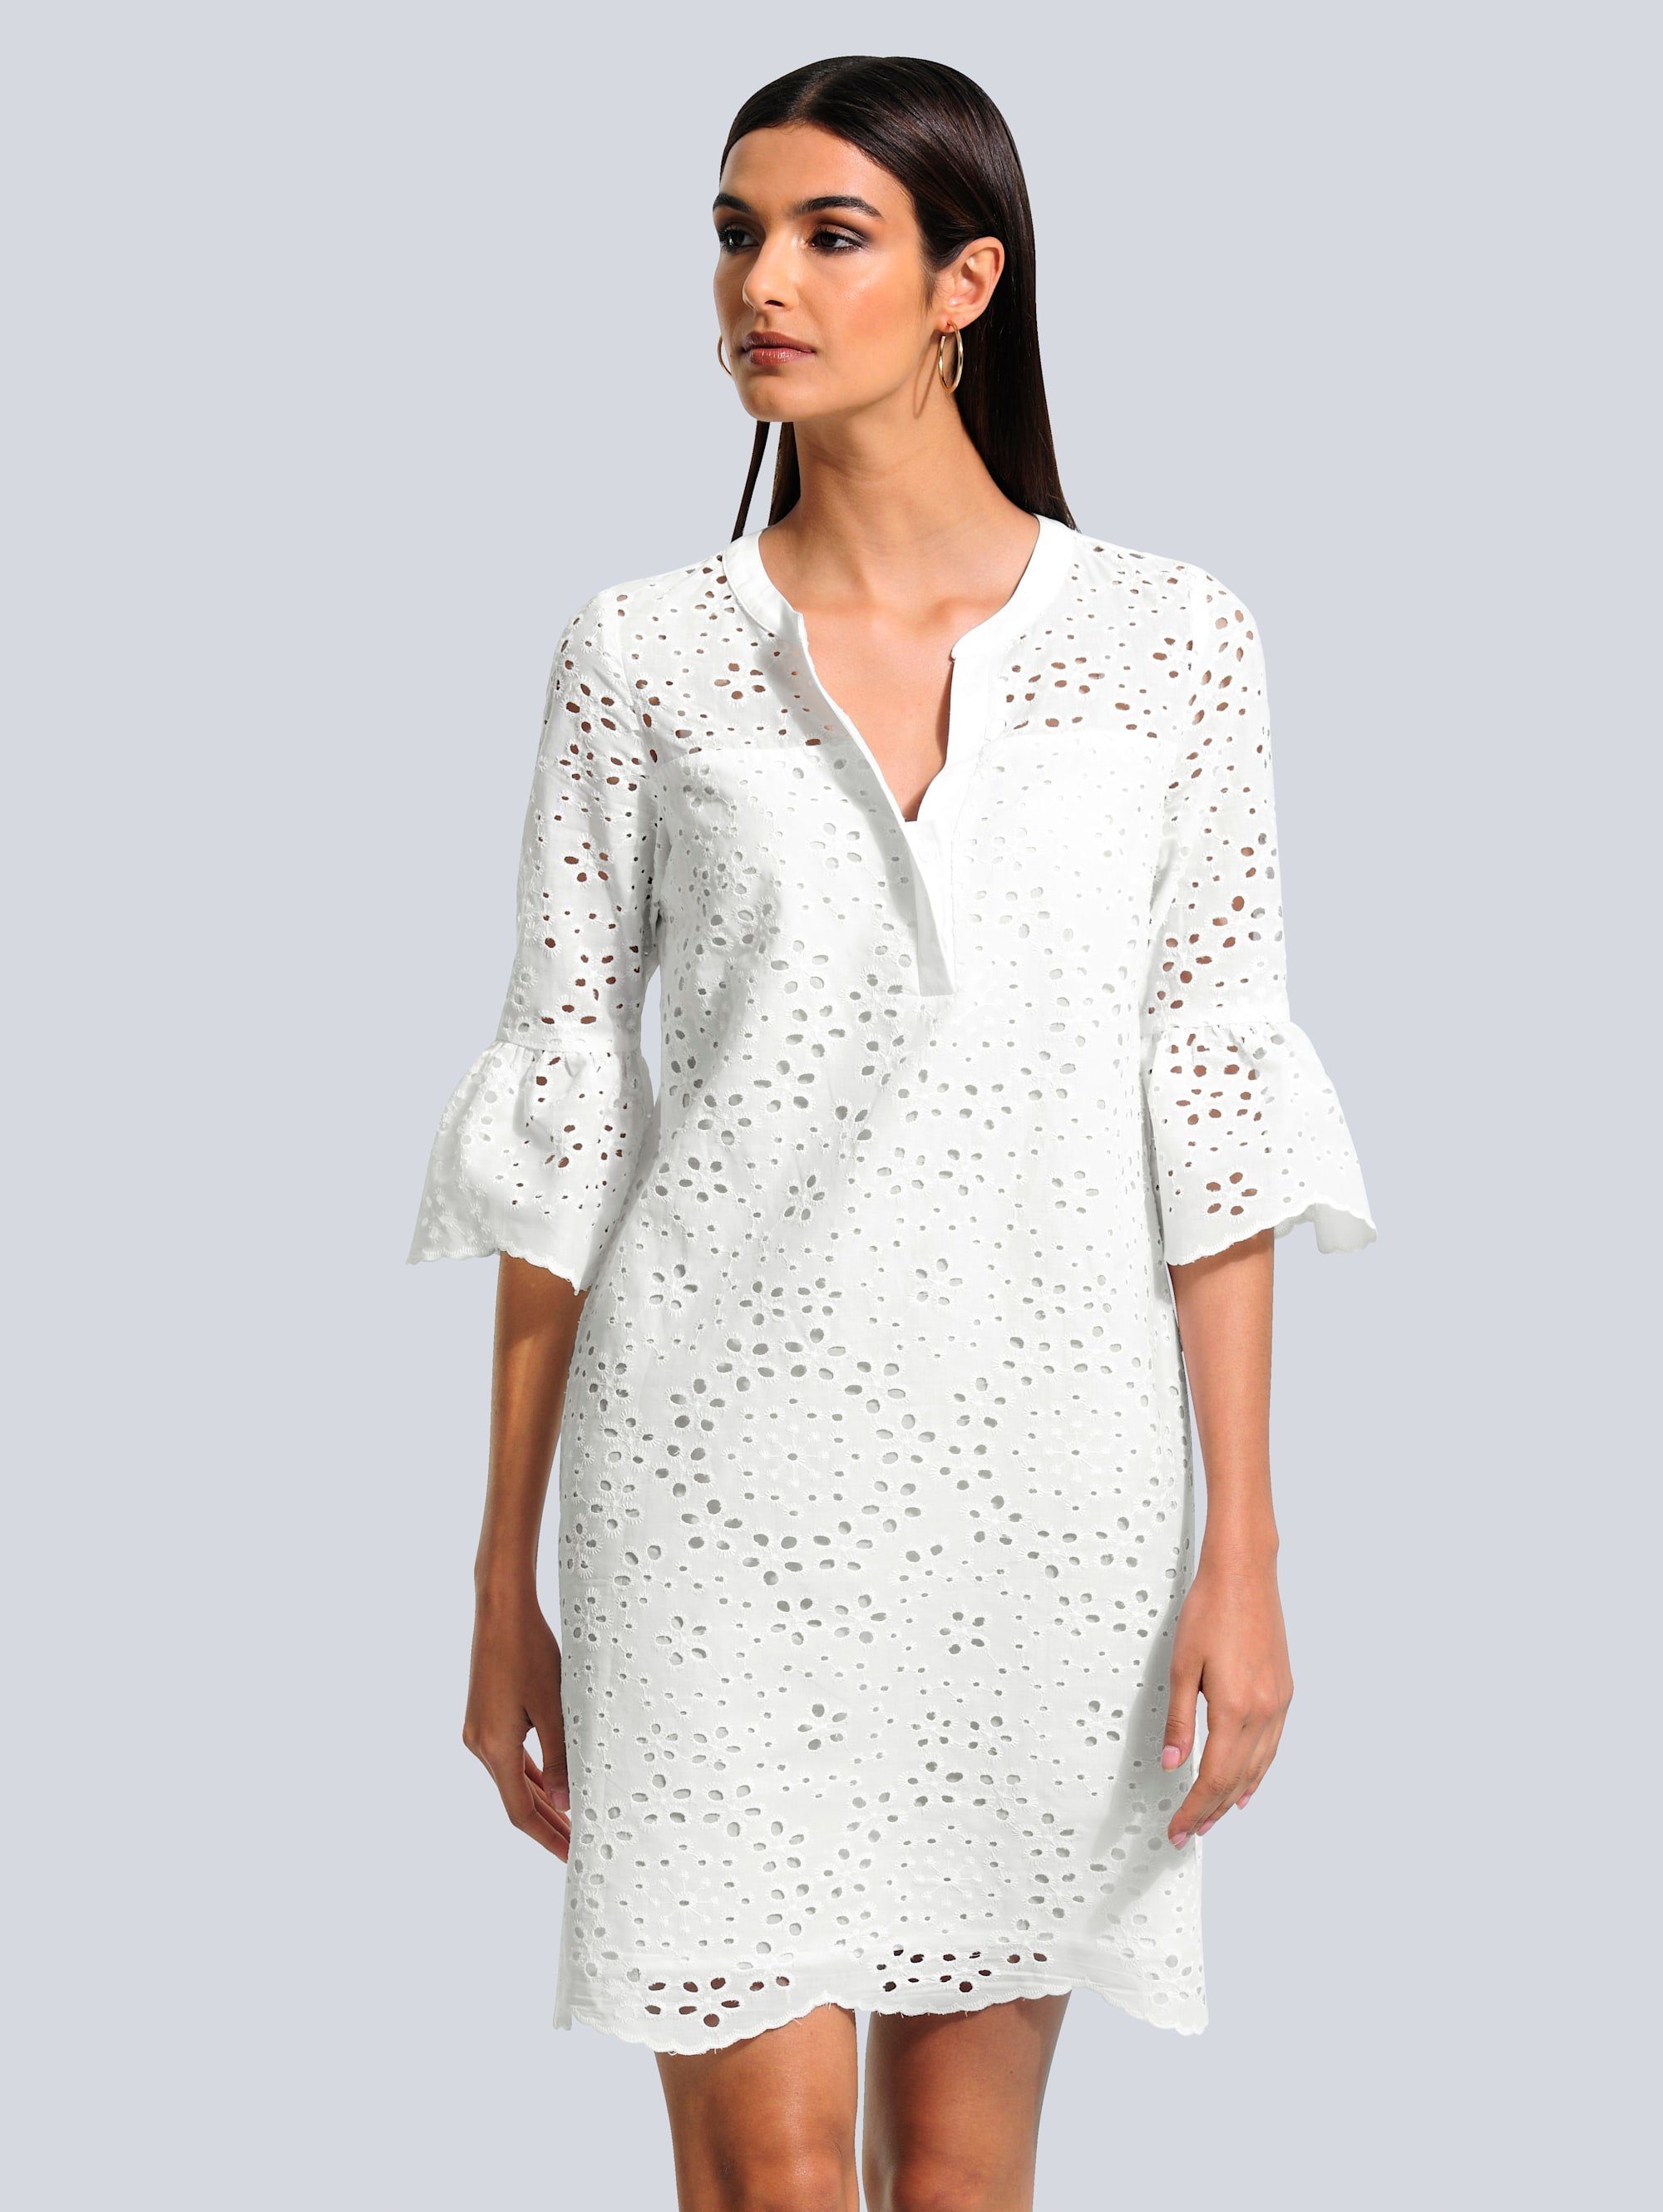 Weißes Kleid online kaufen | OTTO